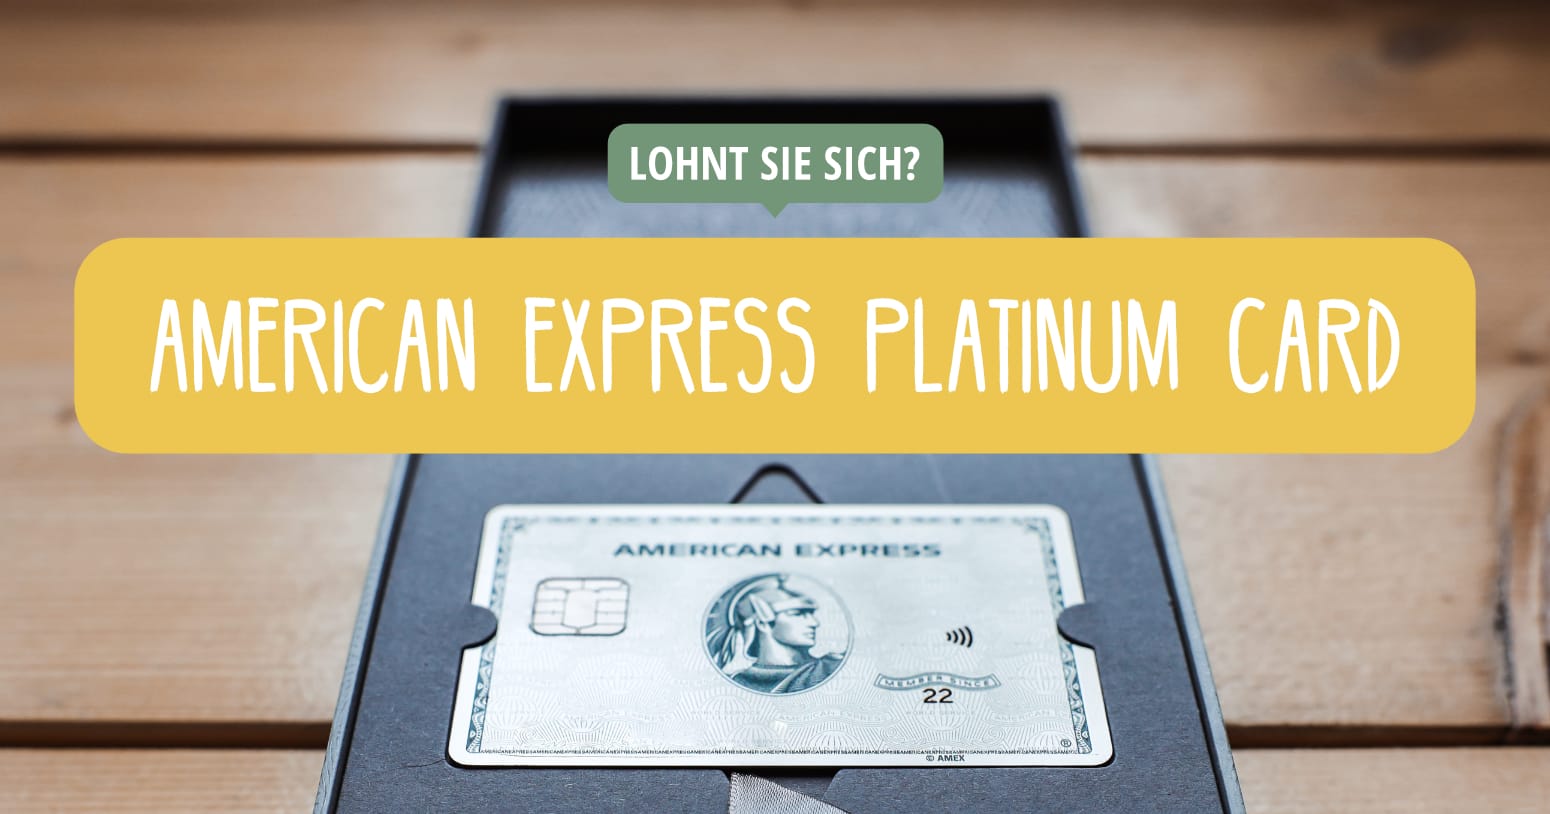 American Express Platinum Card - Lohnt sie sich für Reisen und Weltreisen?